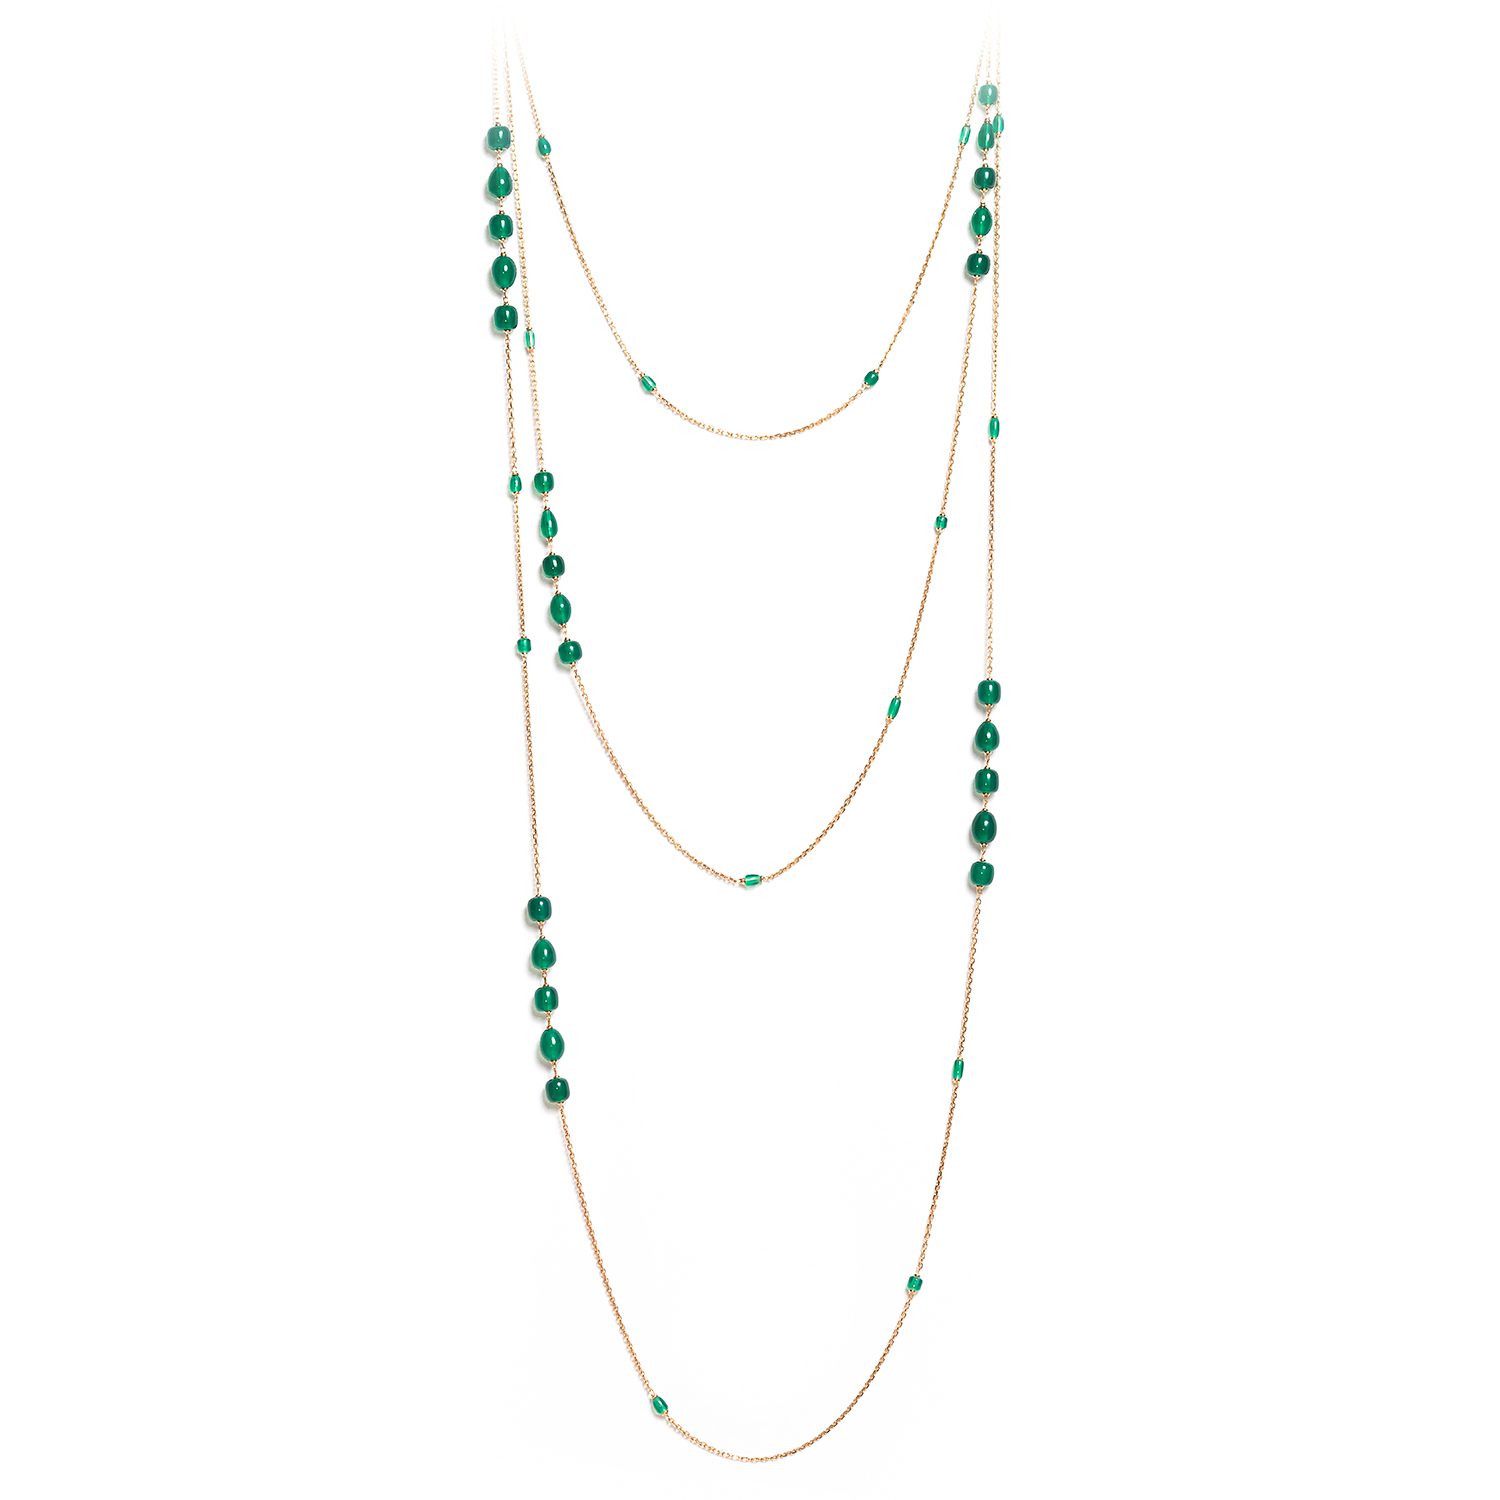 benedicte-de-boysson-parure-style-long-sautoir-necklace-collection